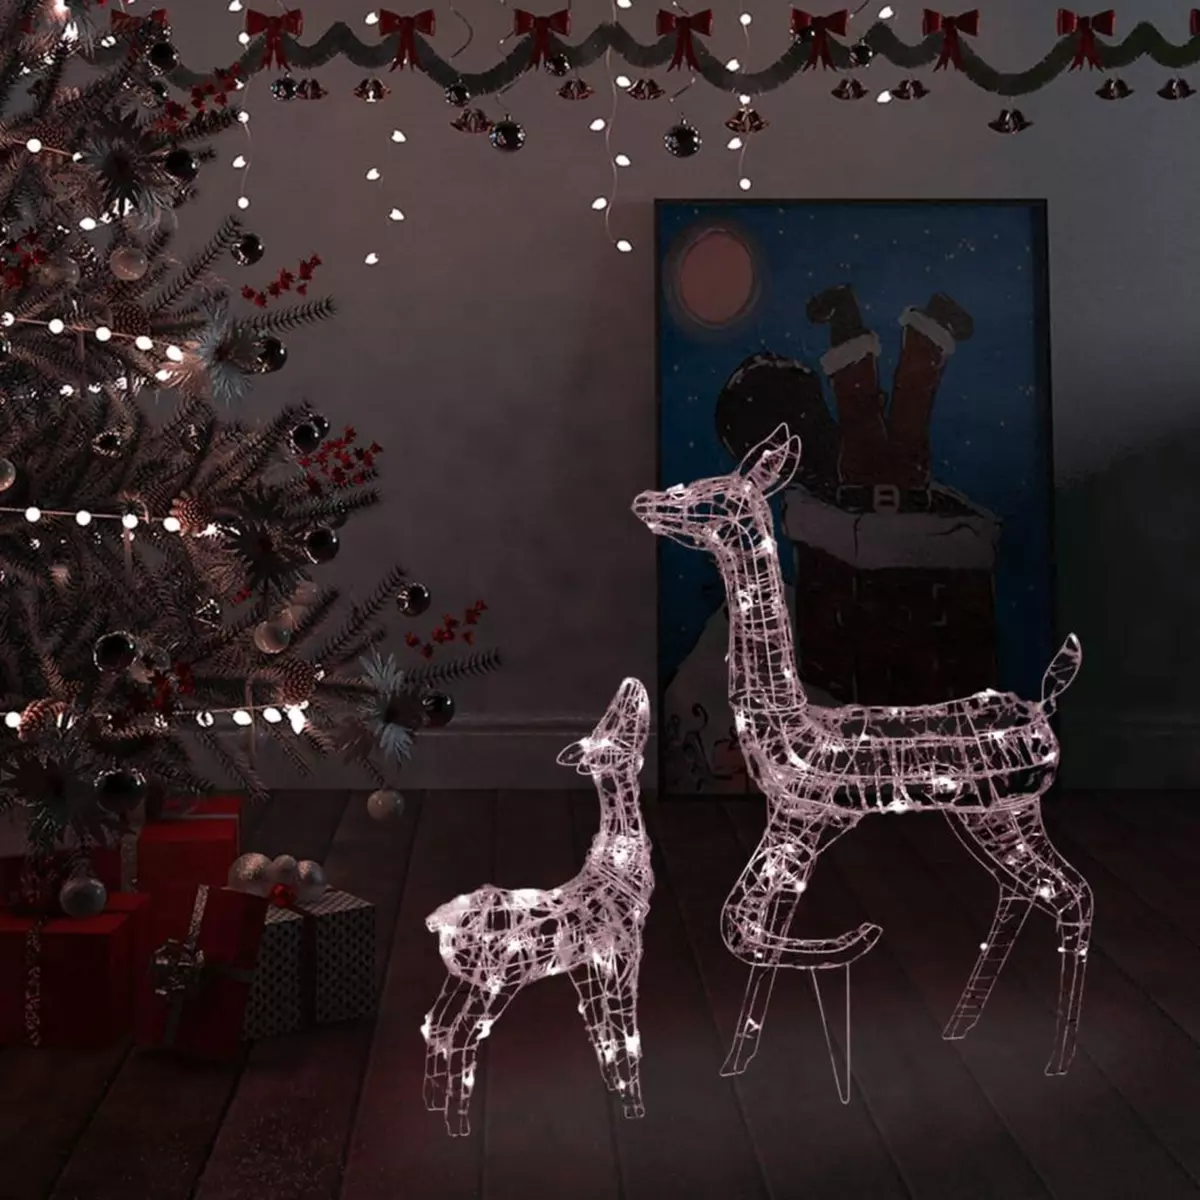 VIDAXL Famille de rennes de decoration Acrylique 160 LED blanc chaud